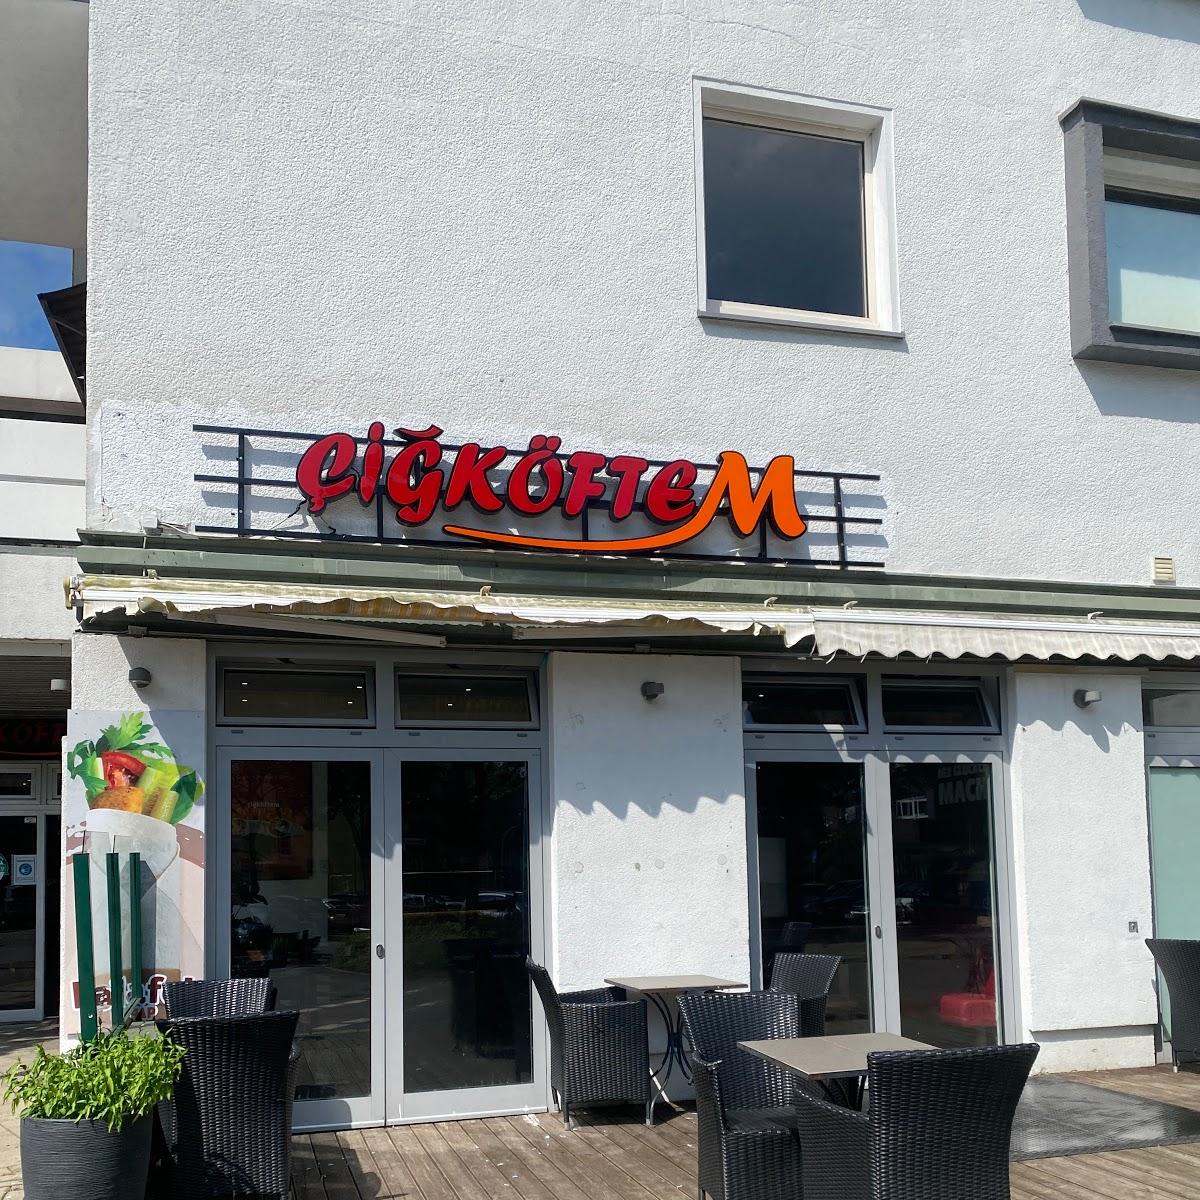 Restaurant "Cigköftem" in Herten